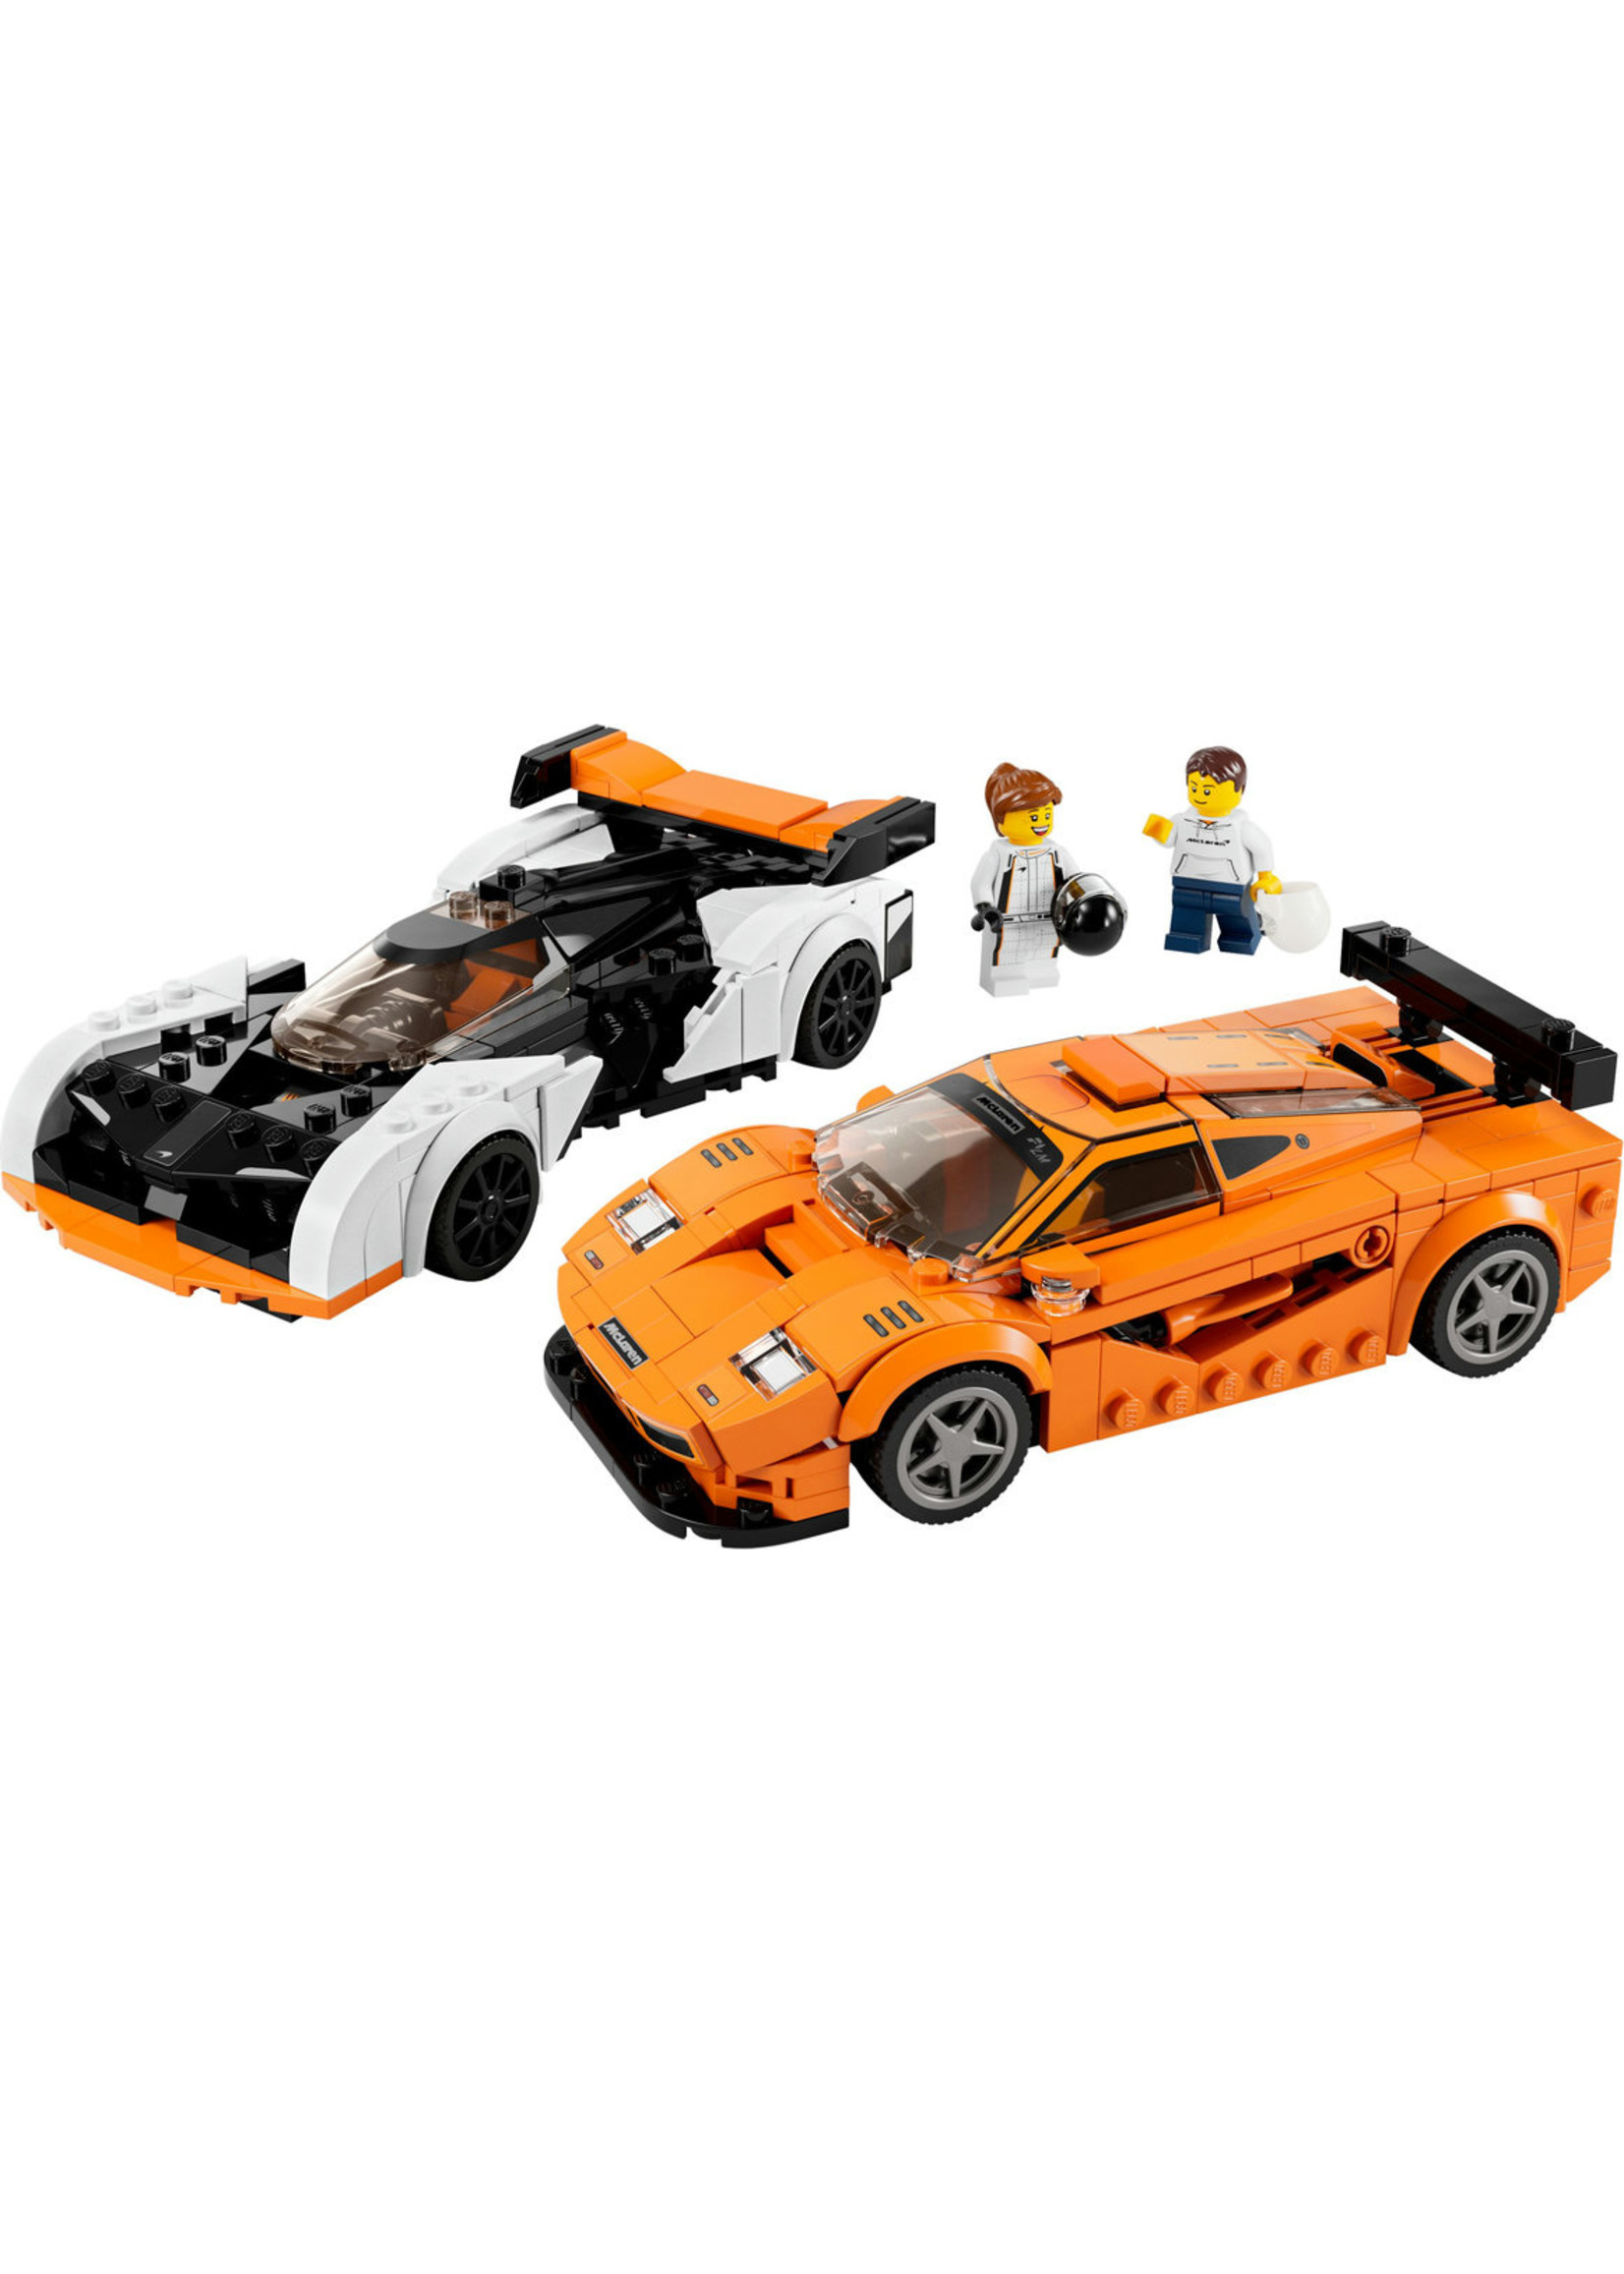 LEGO 76918 - McLaren Solus GT &F1 LM